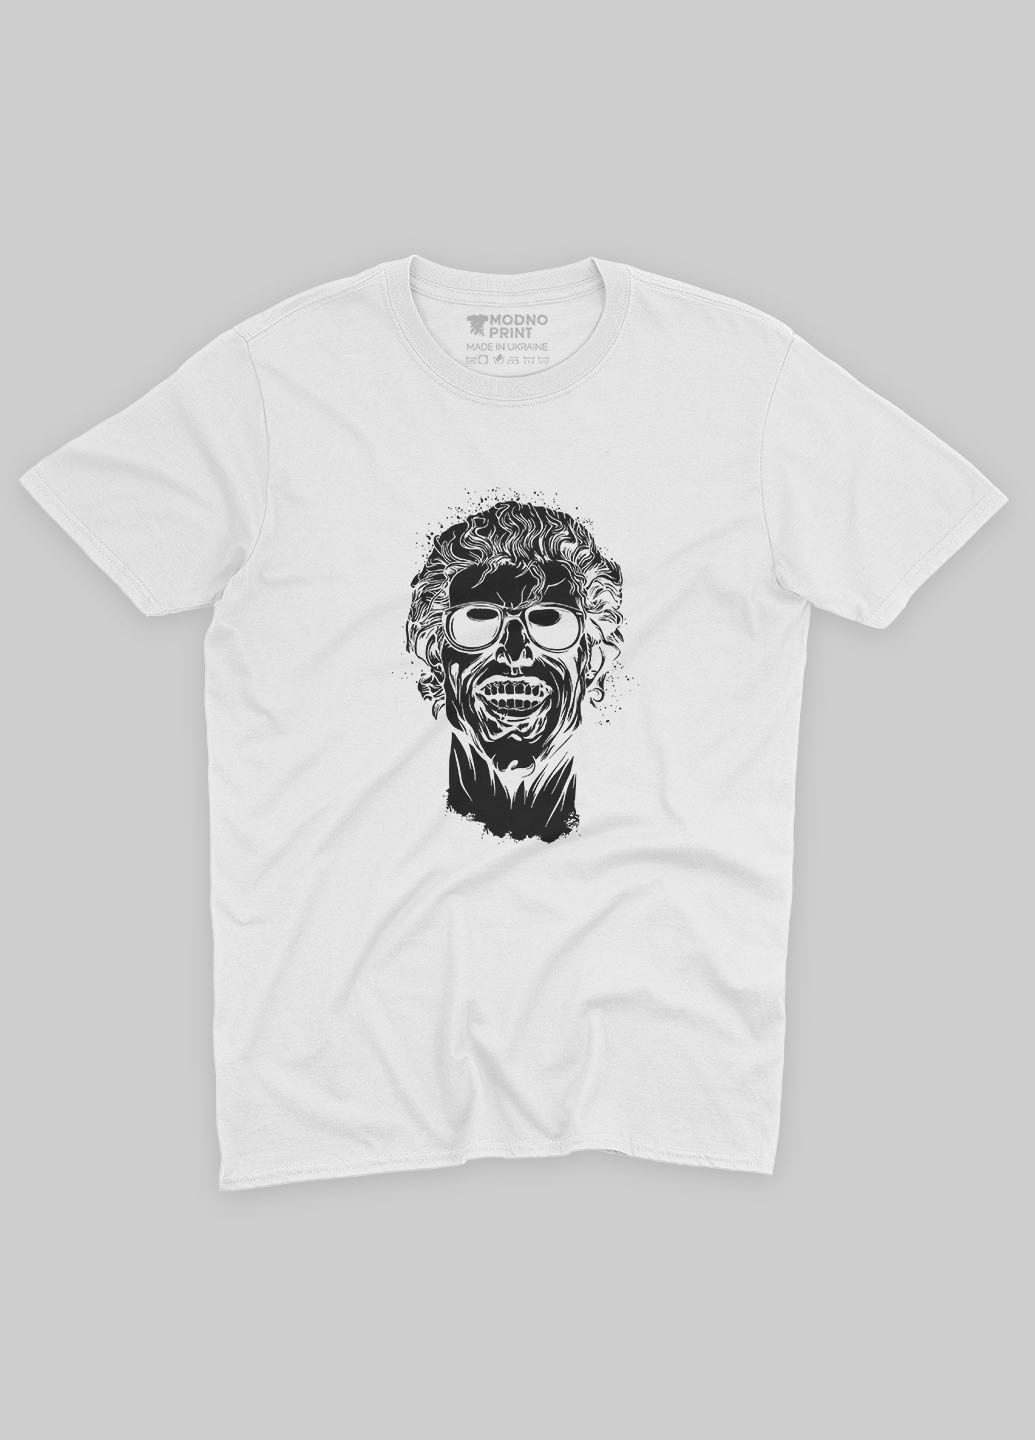 Белая мужская футболка с принтом супервора - джокер (ts001-1-whi-006-005-023) Modno